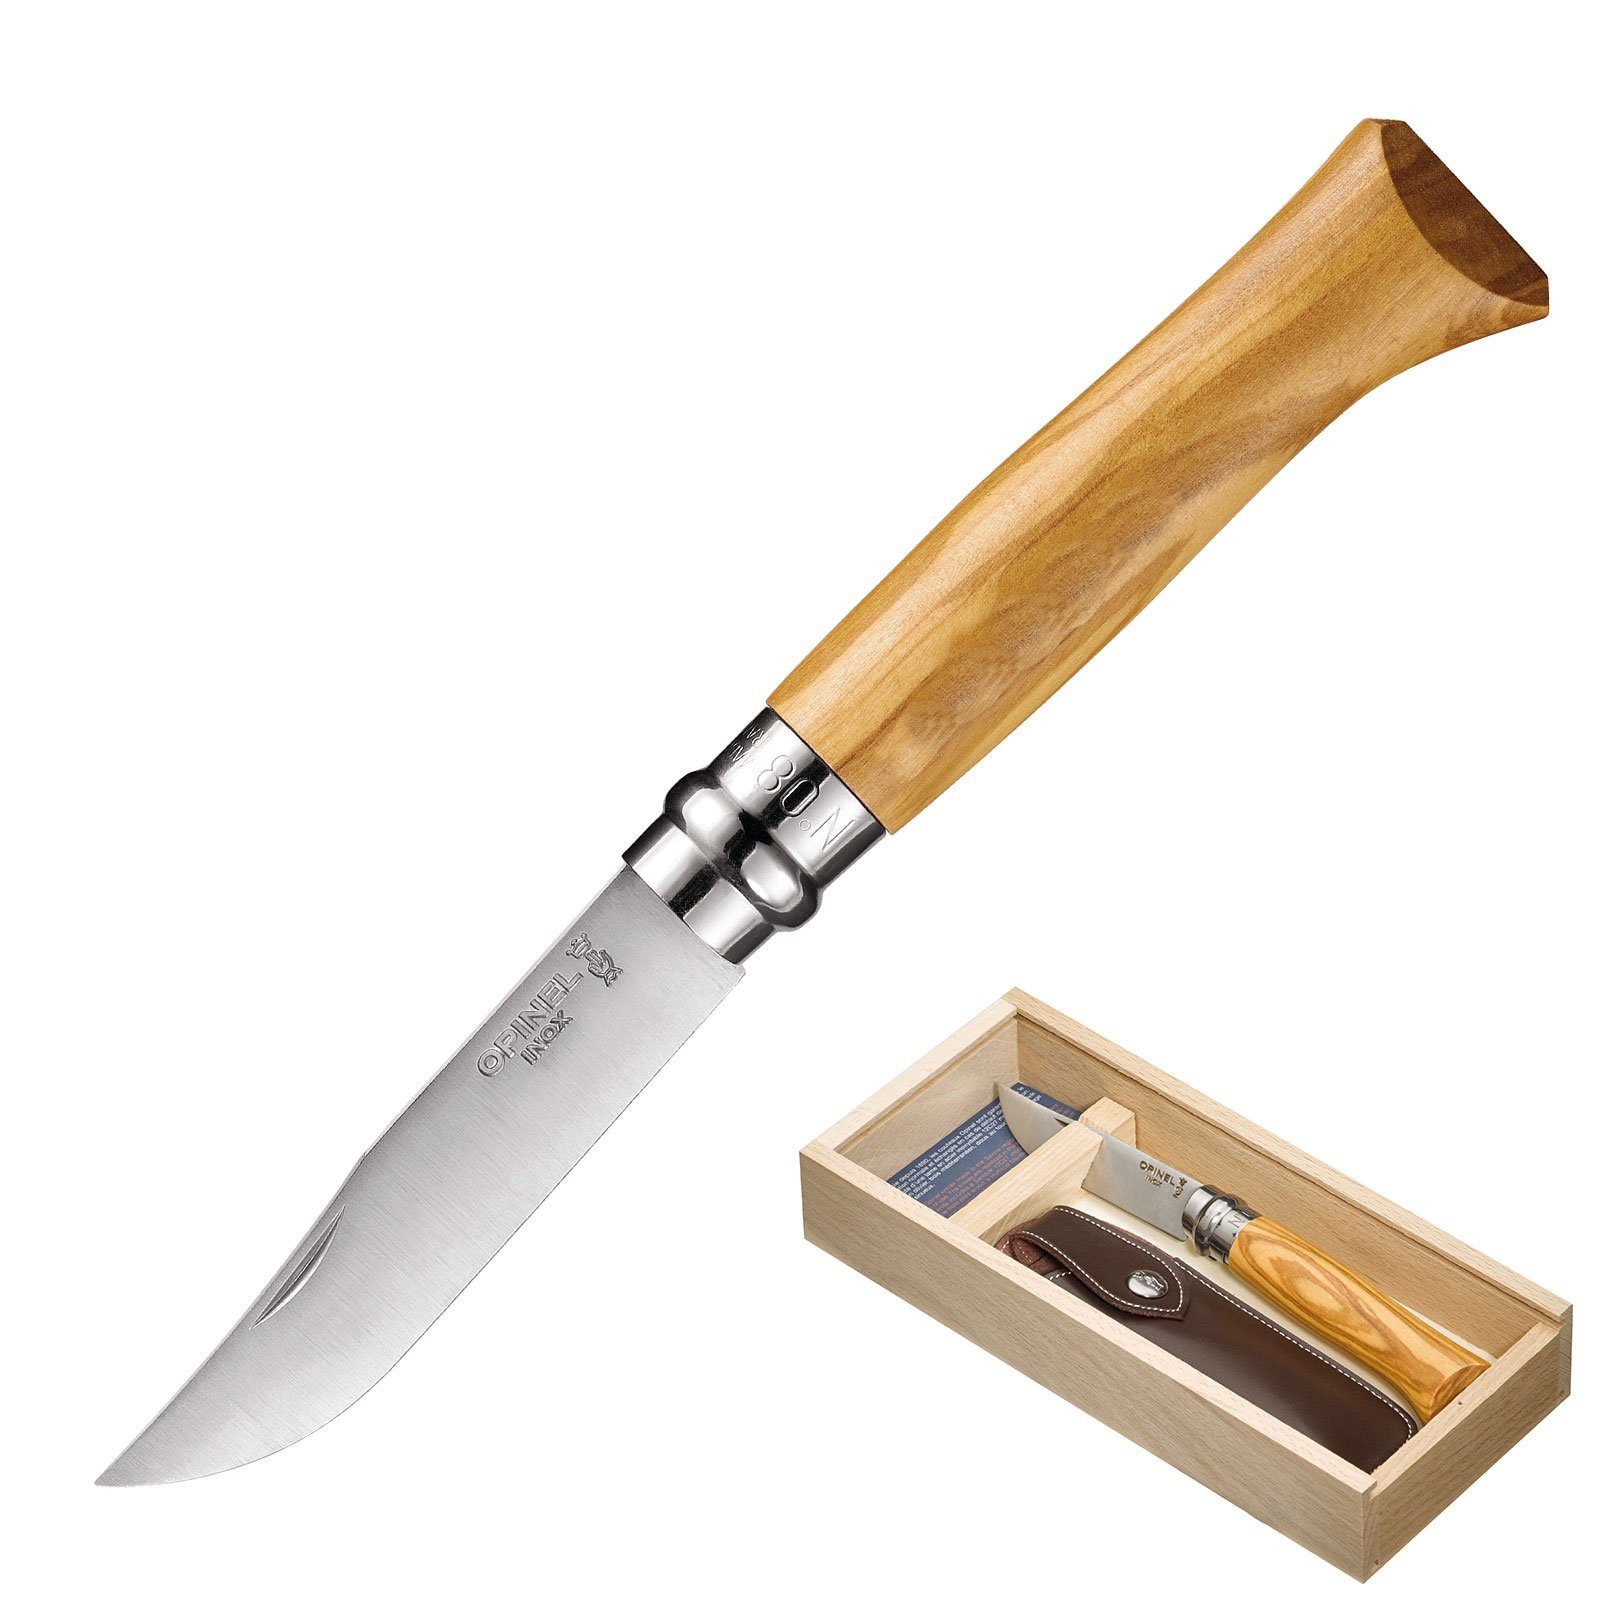 Holz Oliven Klappmesser 8 Set No. Opinel Taschenmesser + Etui, Messer Taschenmesser Geschenk